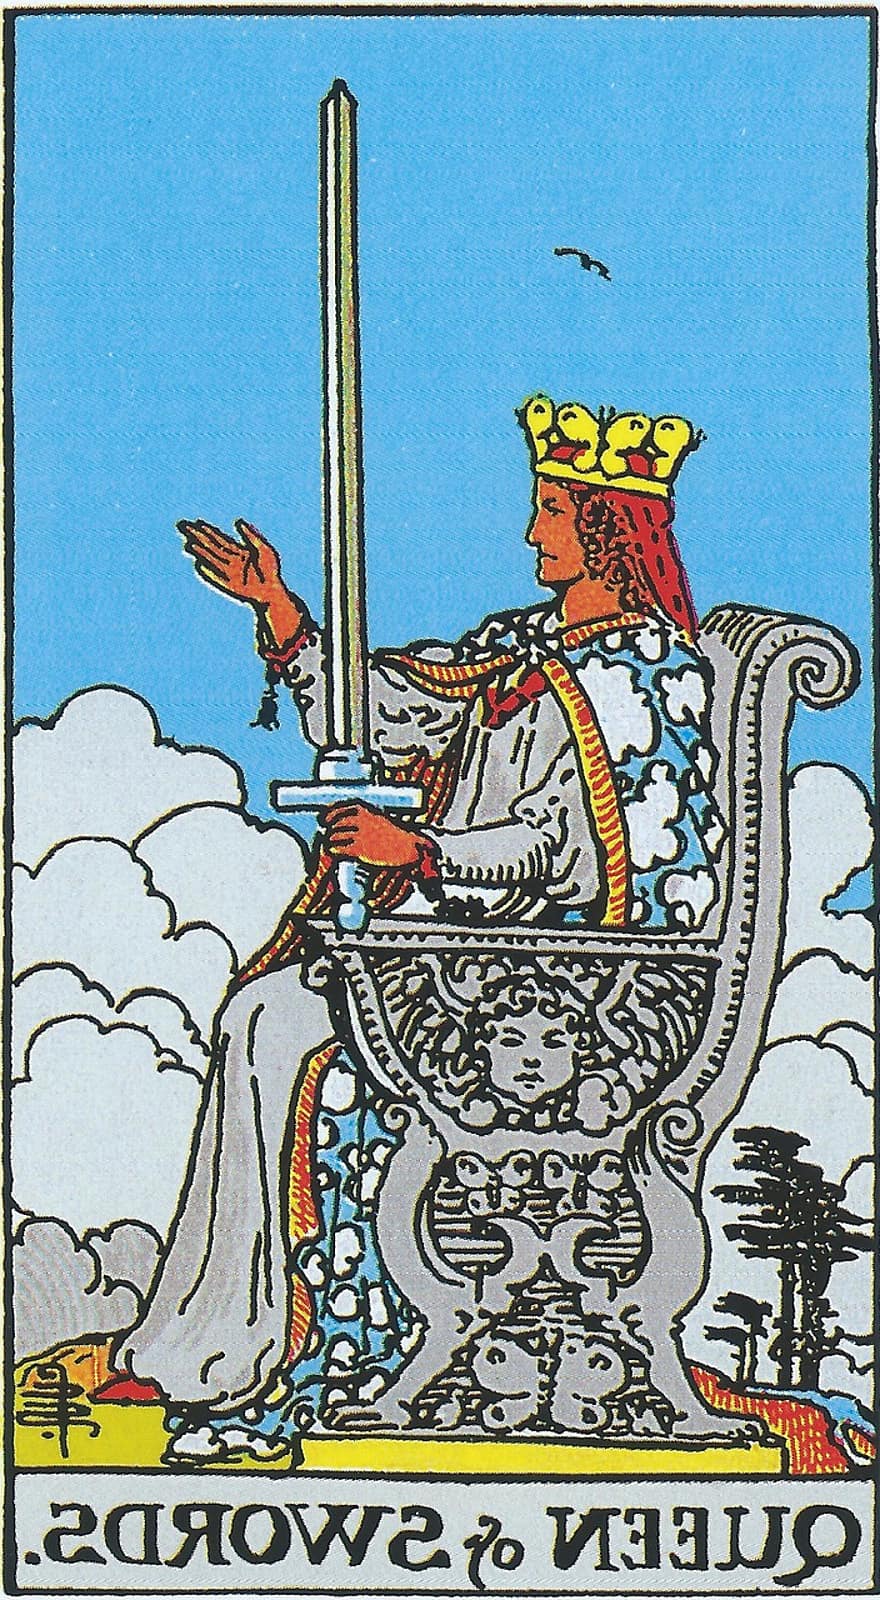 Reina d'espases, tarot, Arcans menors, Tarot de Rider Waite, endevinació, espiritualitat, ocult